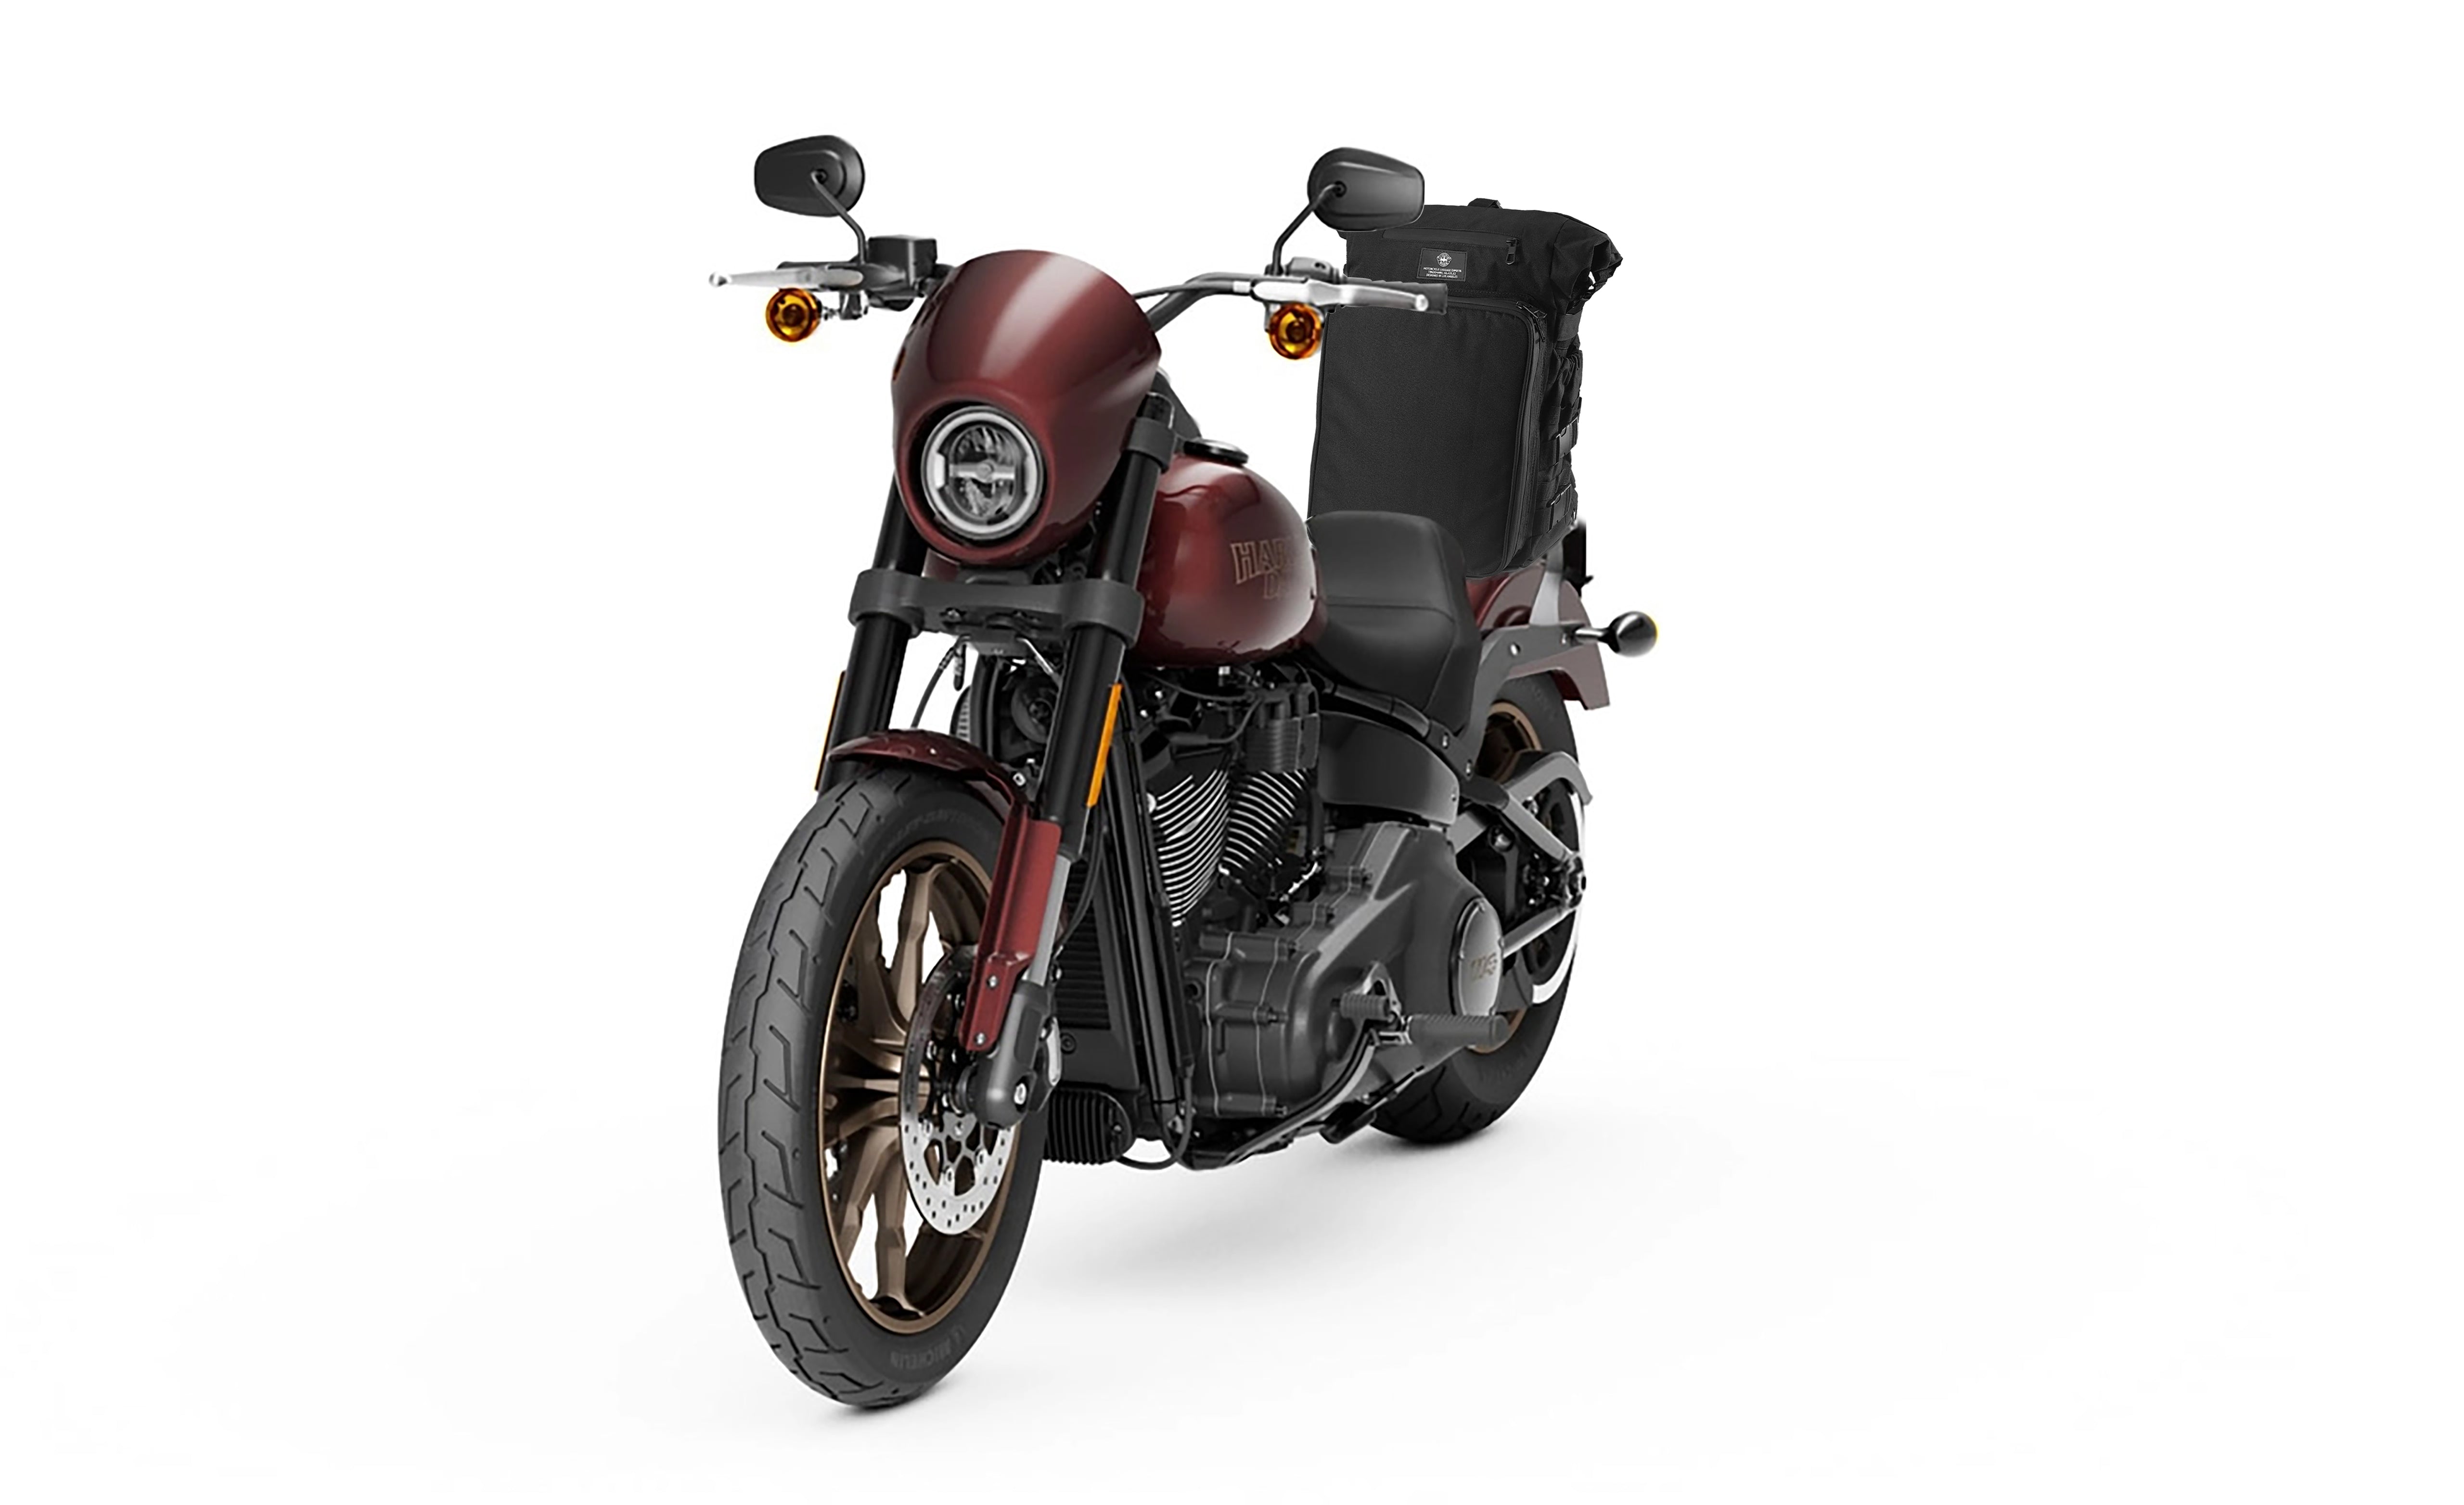 Viking Renegade XL Hyosung Motorcycle Sissy Bar Bag Bag on Bike View @expand